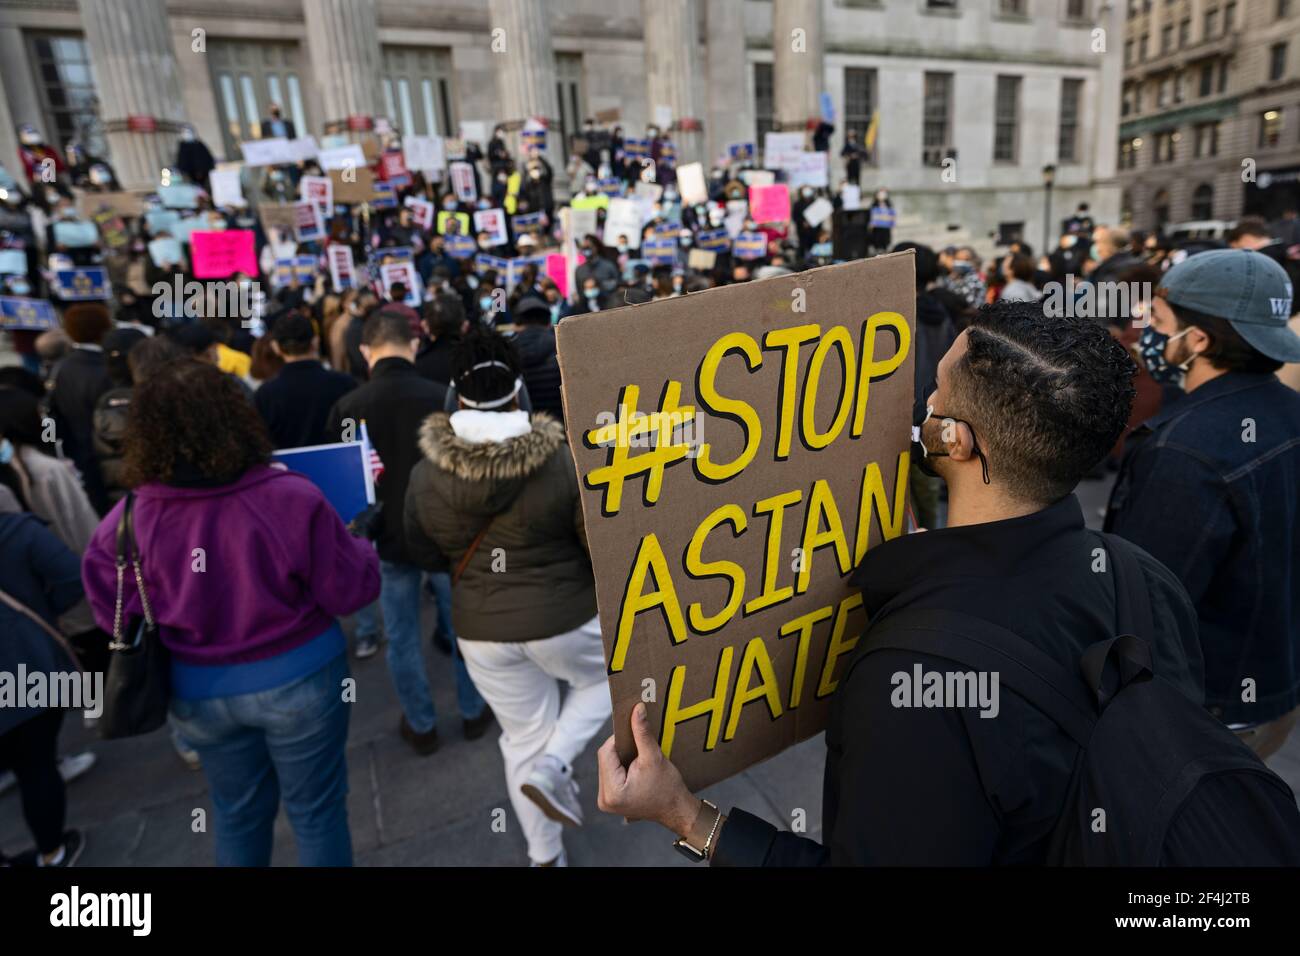 Brooklyn, New York, Stati Uniti. 21 marzo 2021 l'uomo detiene il segno di "Stop Asian Hate" durante il raduno contro la violenza e la discriminazione dopo i recenti attacchi contro gli Asian-Americani a New York City e in tutti gli Stati Uniti durante la pandemia COVID-19. Credit: Joseph Reid/Alamy Live News Foto Stock